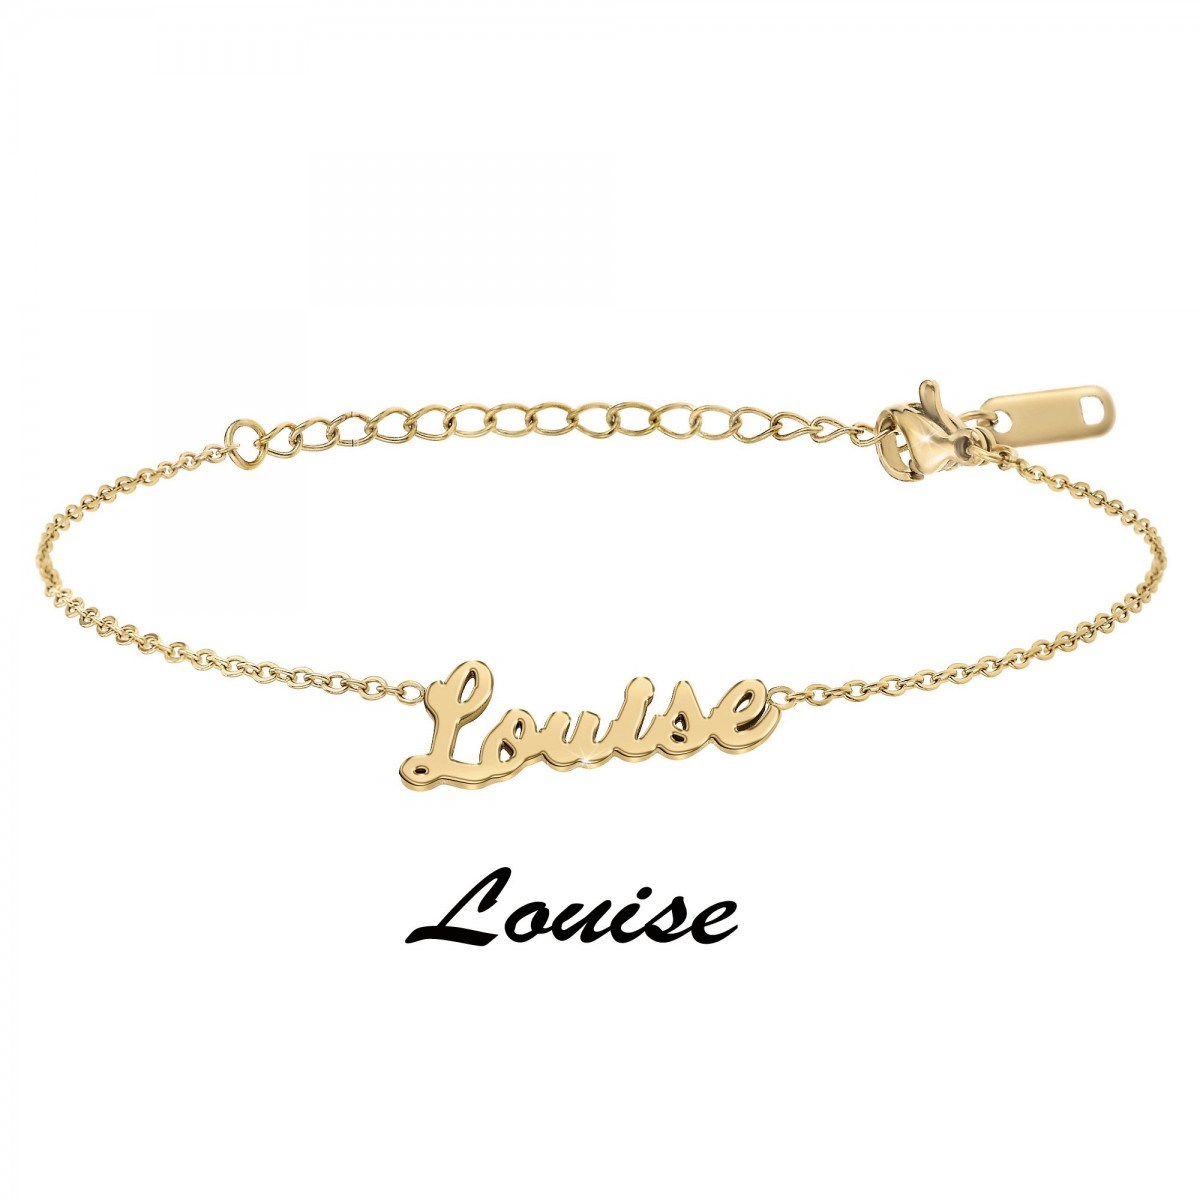 Louise - Bracelet prénom - vue 3